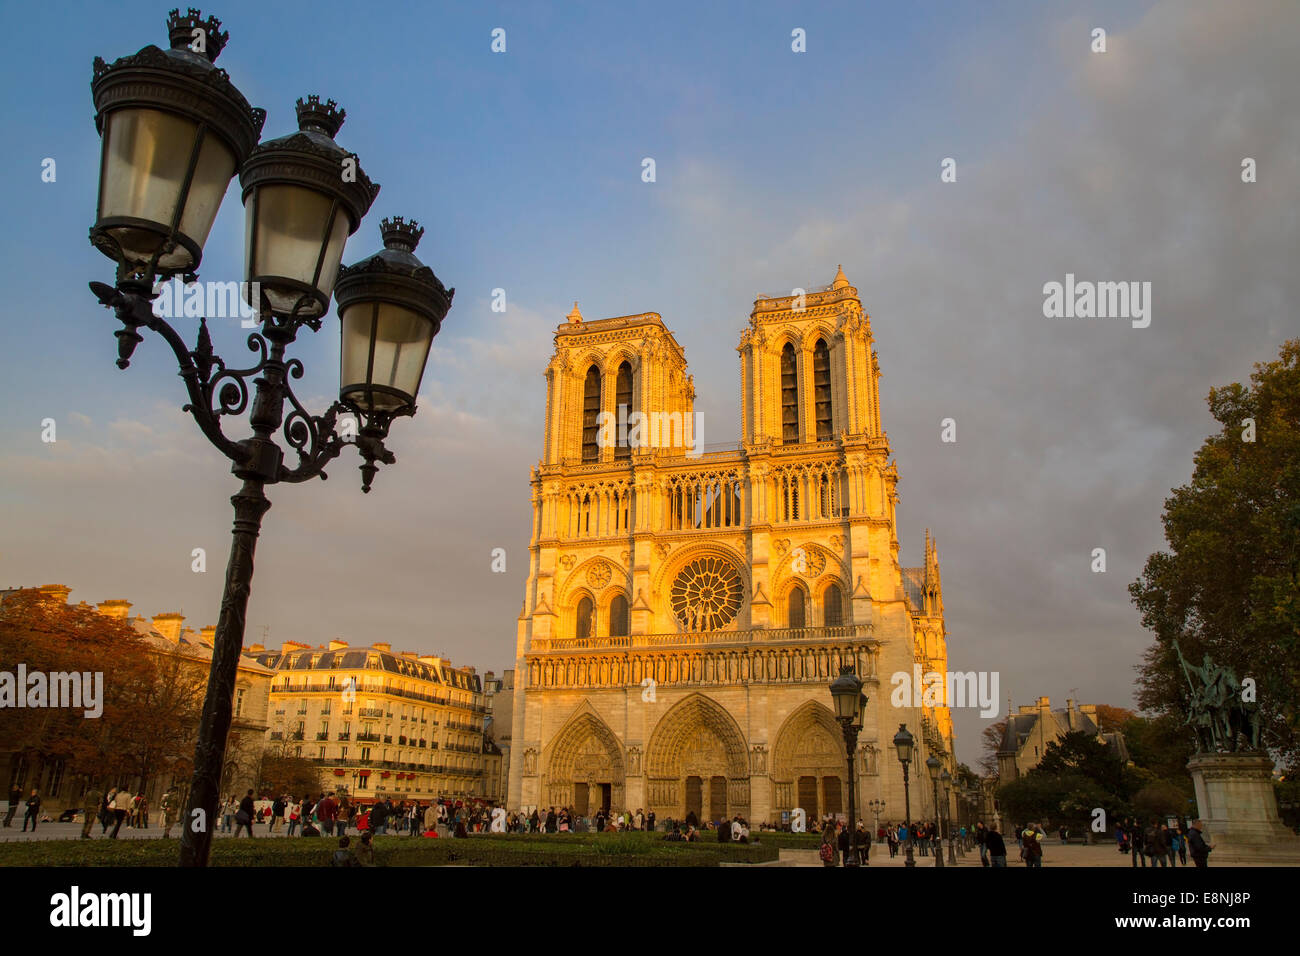 Impostando la luce solare sulla facciata anteriore della cattedrale di Notre Dame, Paris, Francia Foto Stock